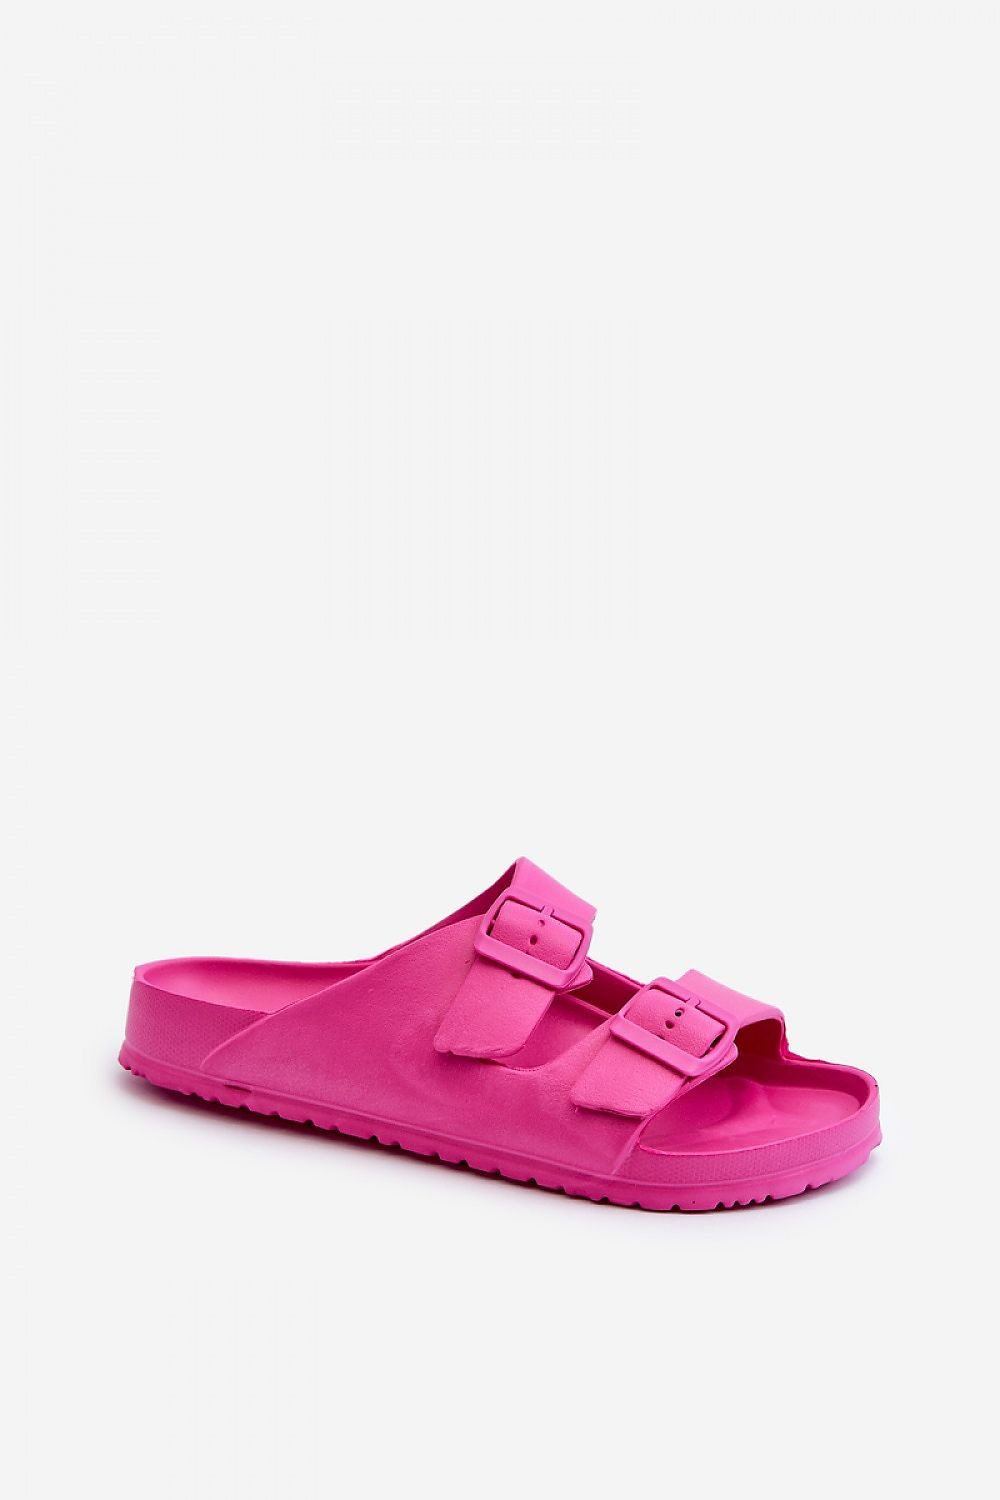 TEEK - Double Buckle Foam Sandals SHOES TEEK MH pink 6.5 